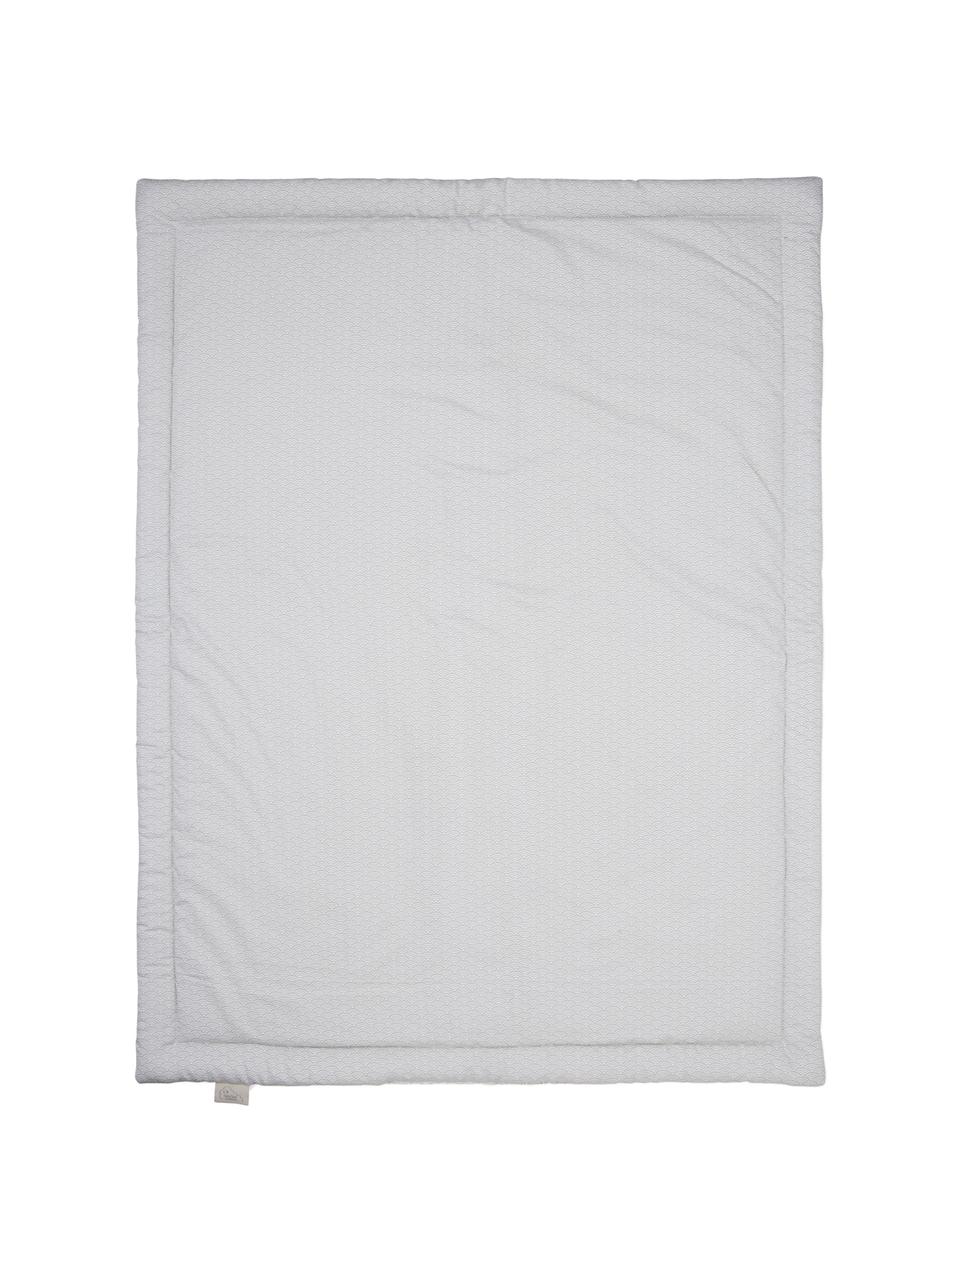 Decke Wave aus Bio-Baumwolle, Bezug: 100% Biobaumwolle, Öko-Te, Grau, Weiss, 90 x 120 cm